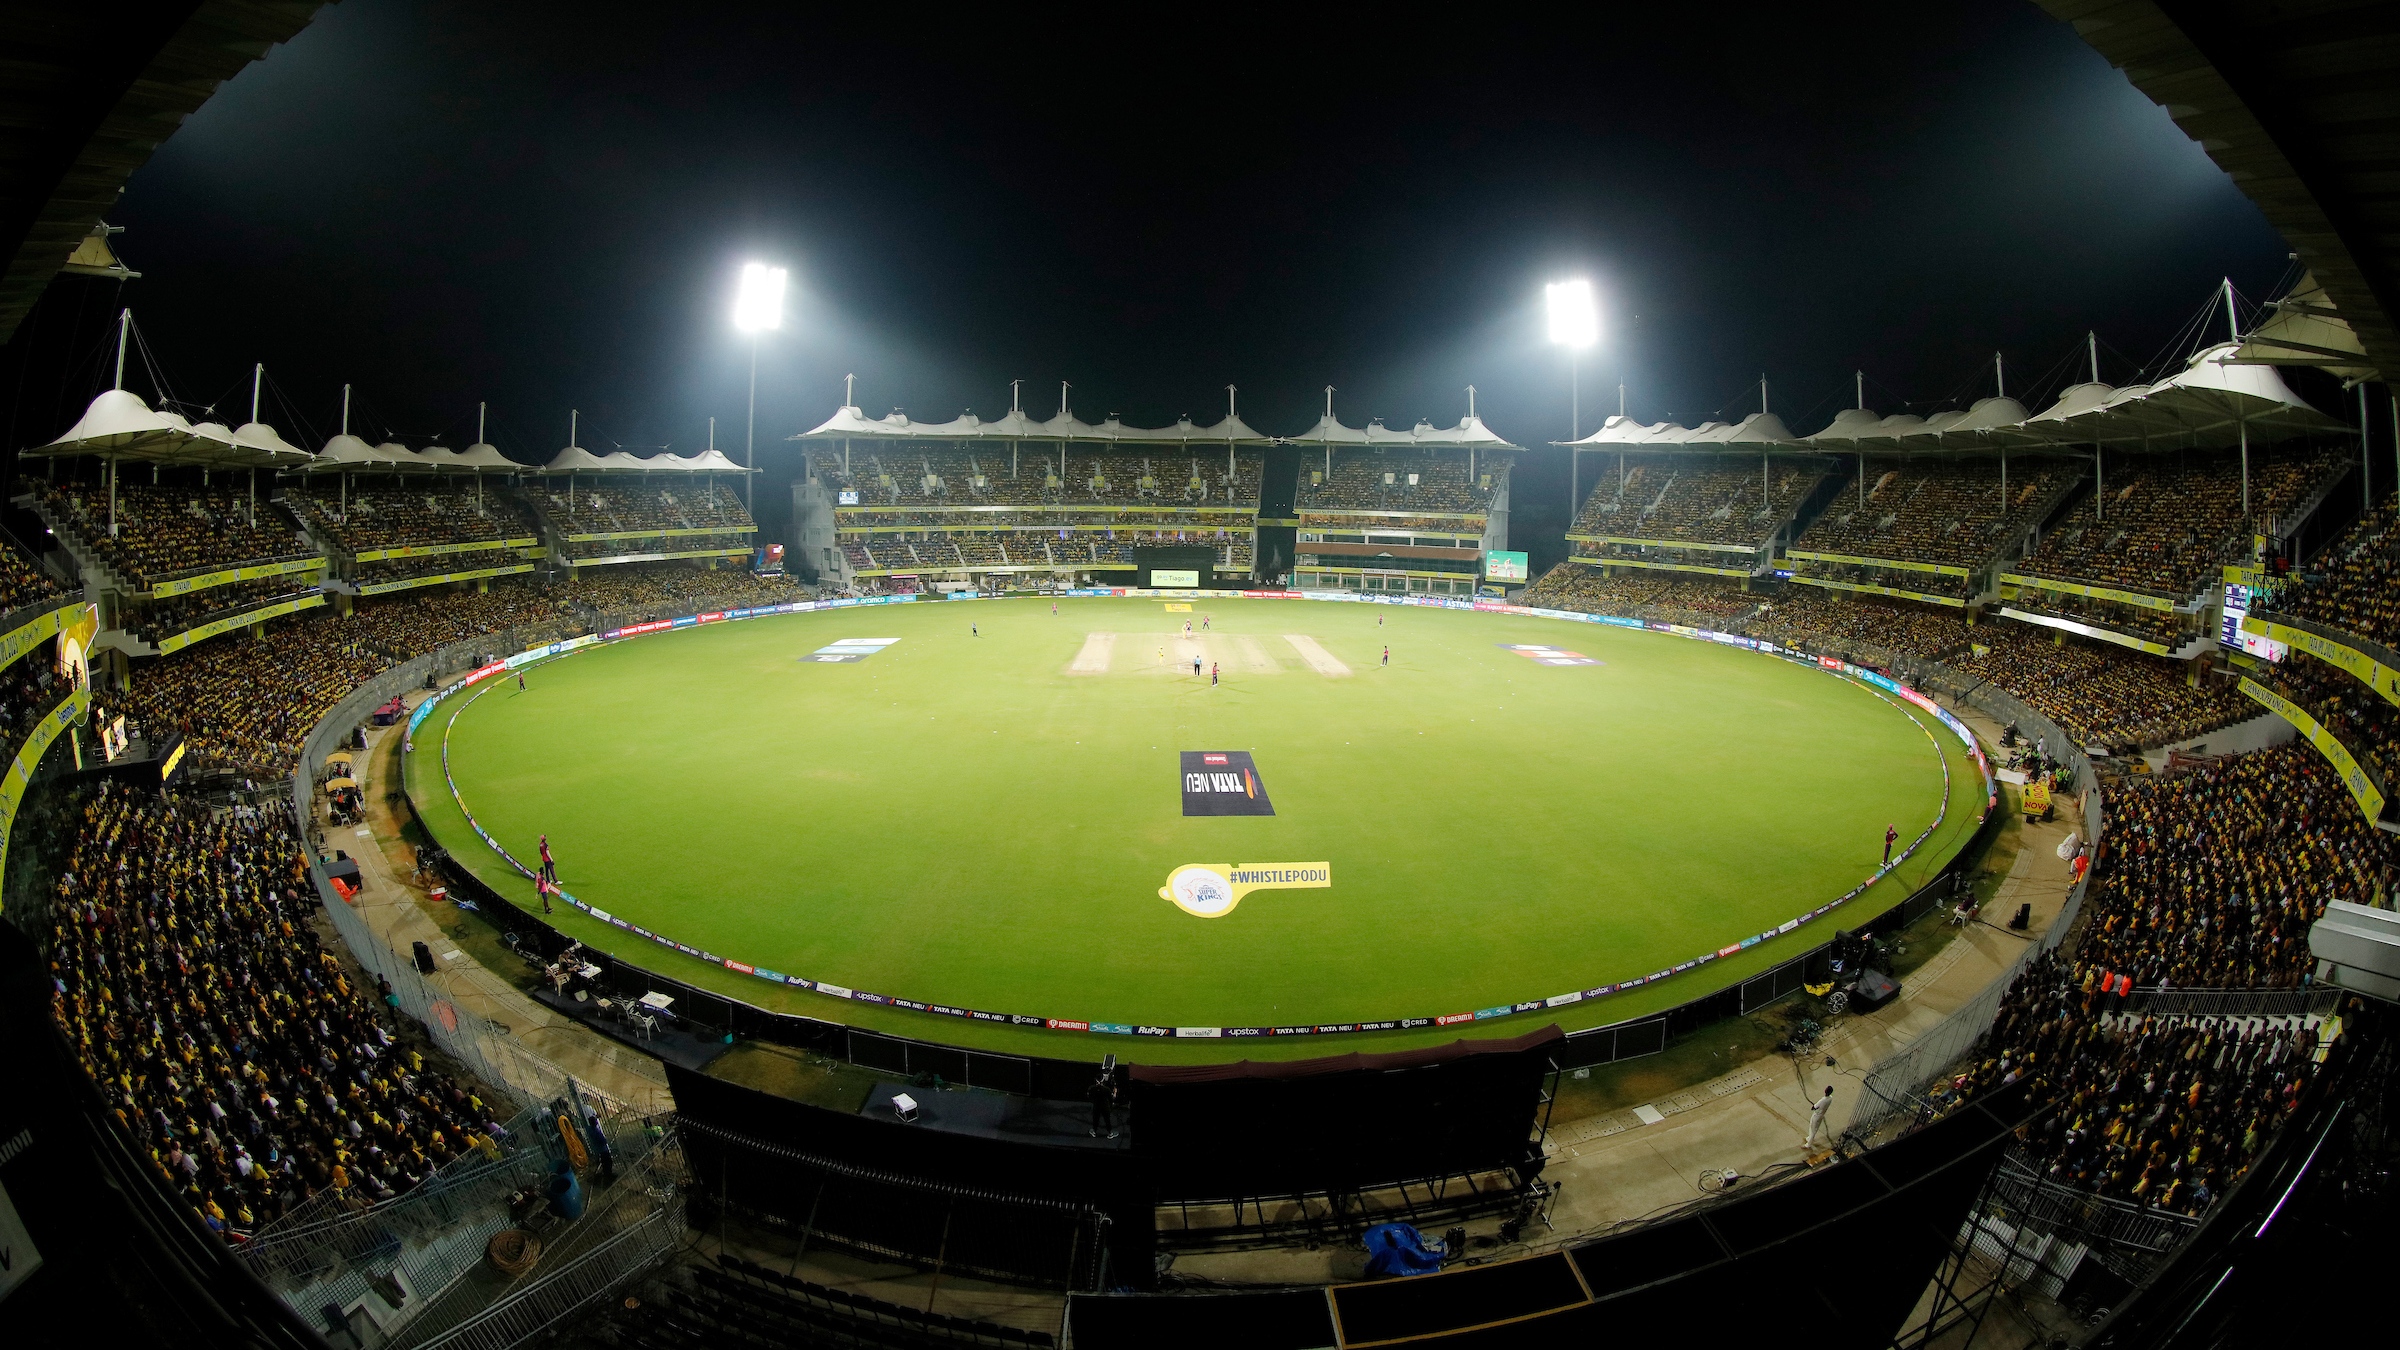 Berputar untuk berkuasa di Kualifikasi 1 IPL 2023 di Stadion Chepauk?  Periksa Catatan Pitch, Statistik, dan Lainnya